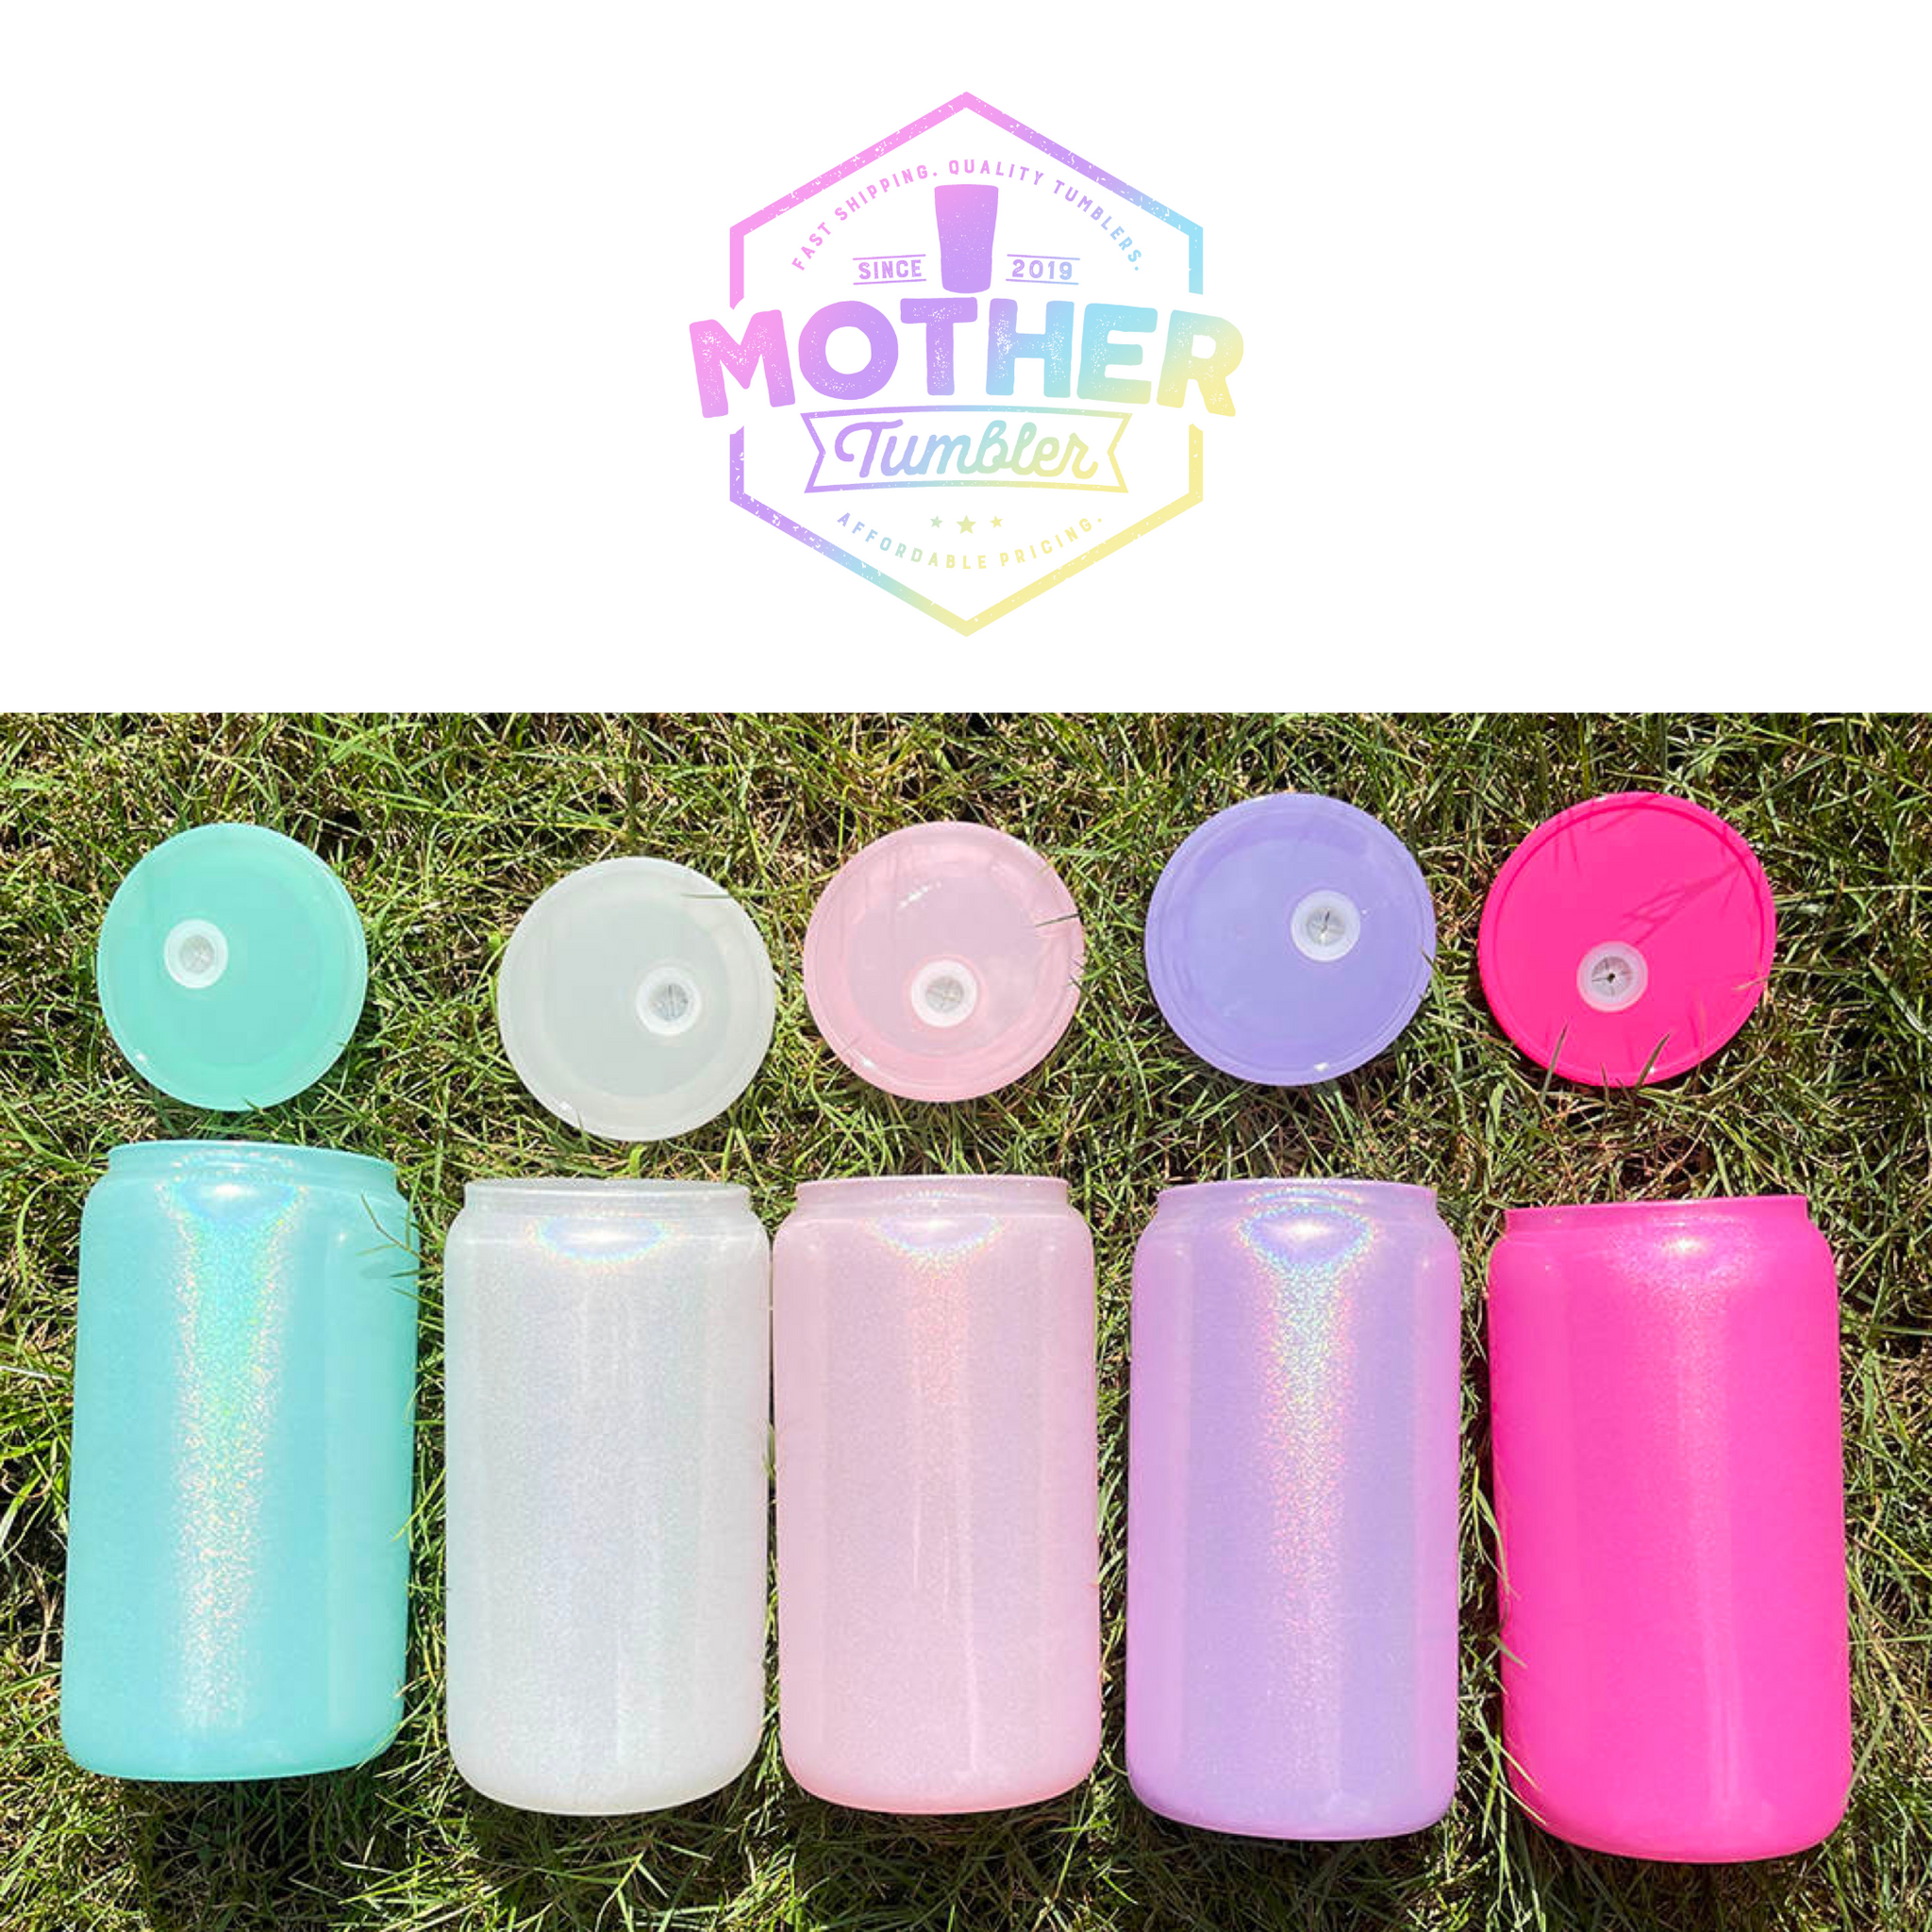 16oz Shimmer Sublimation Glass Tumbler - Mother Tumbler